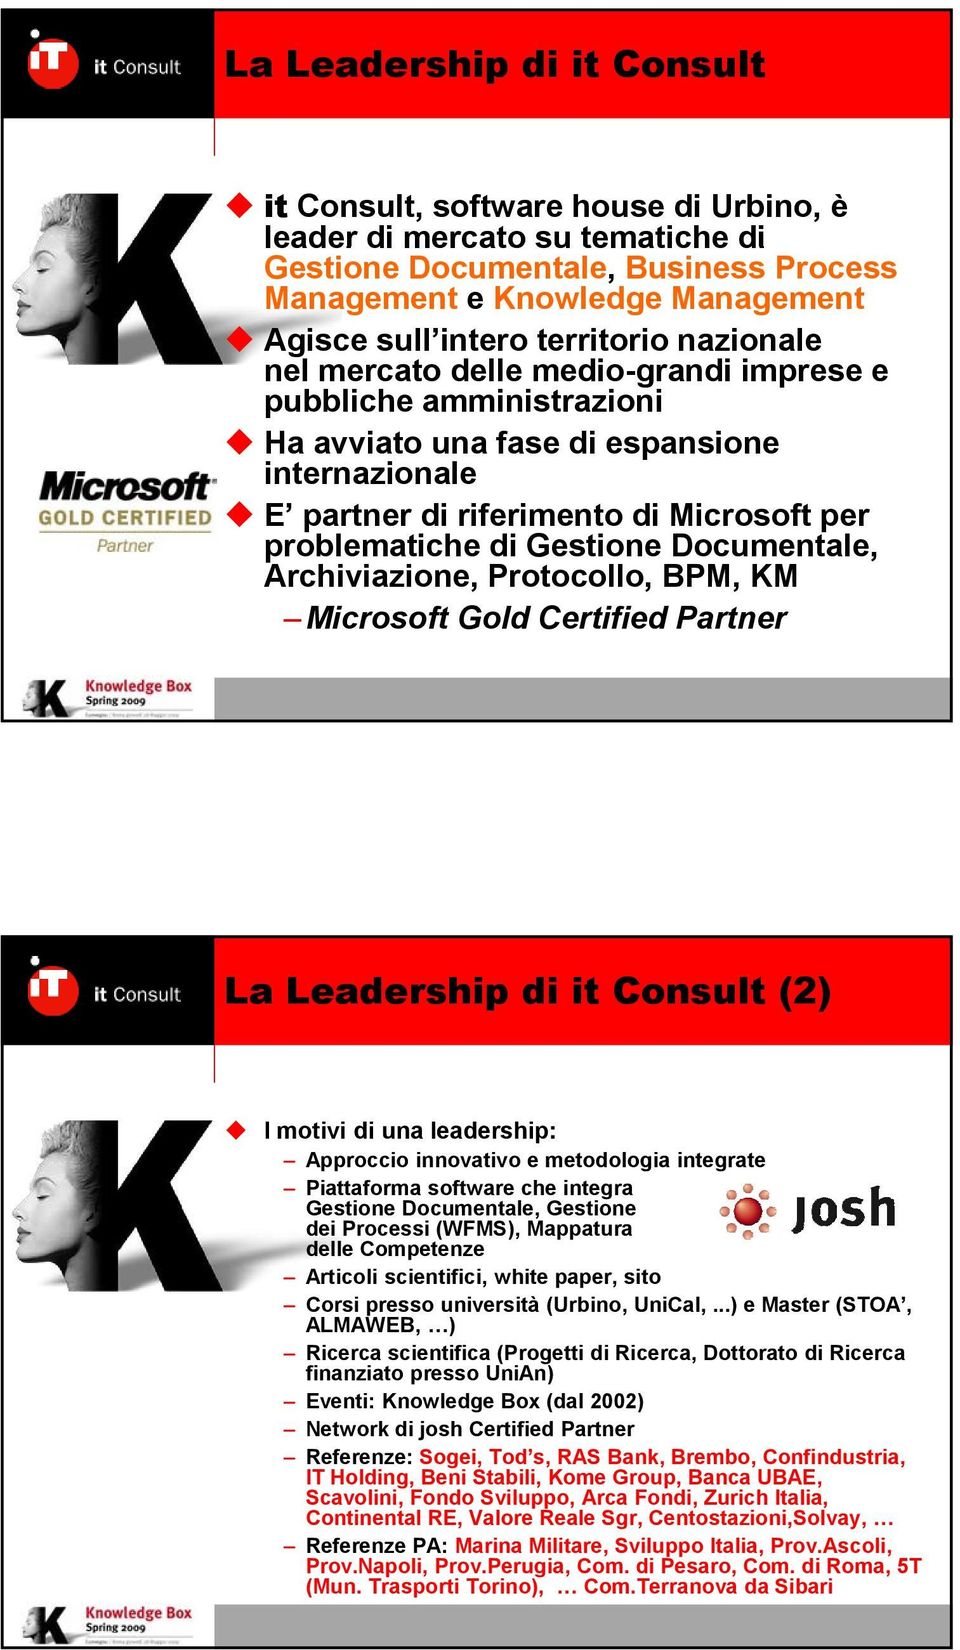 Gestione Documentale, Archiviazione, Protocollo, BPM, KM Microsoft Gold Certified Partner La Leadership di it Consult (2) I motivi di una leadership: Approccio innovativo e metodologia integrate